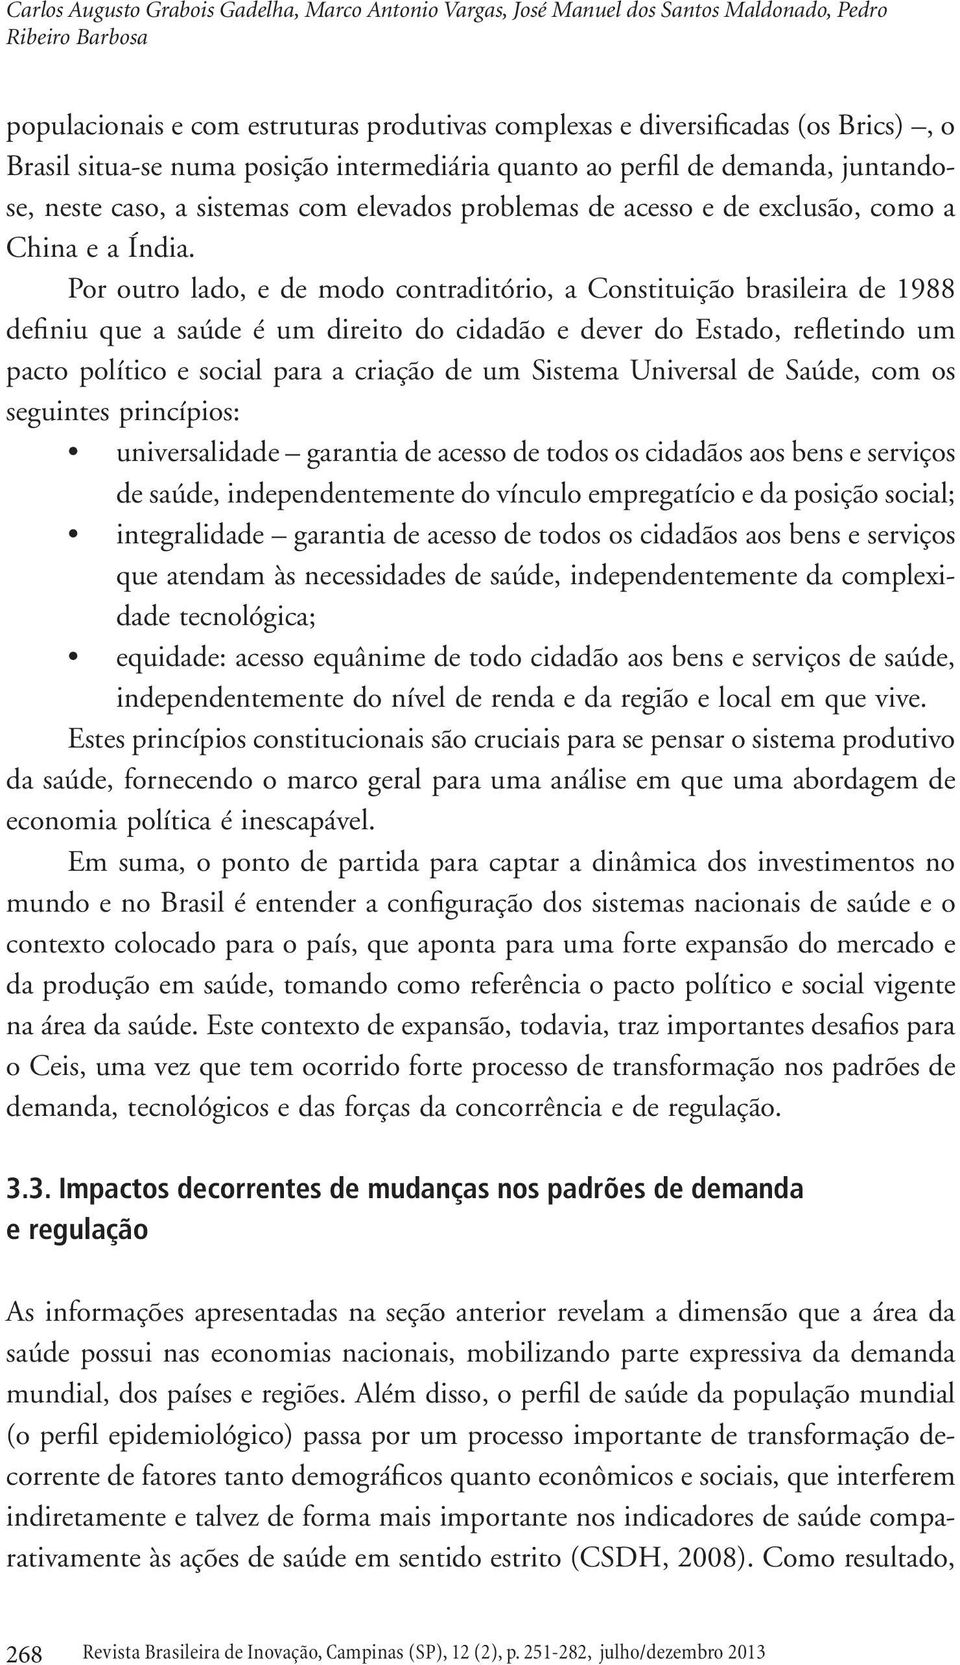 Por outro lado, e de modo contraditório, a Constituição brasileira de 1988 definiu que a saúde é um direito do cidadão e dever do Estado, refletindo um pacto político e social para a criação de um